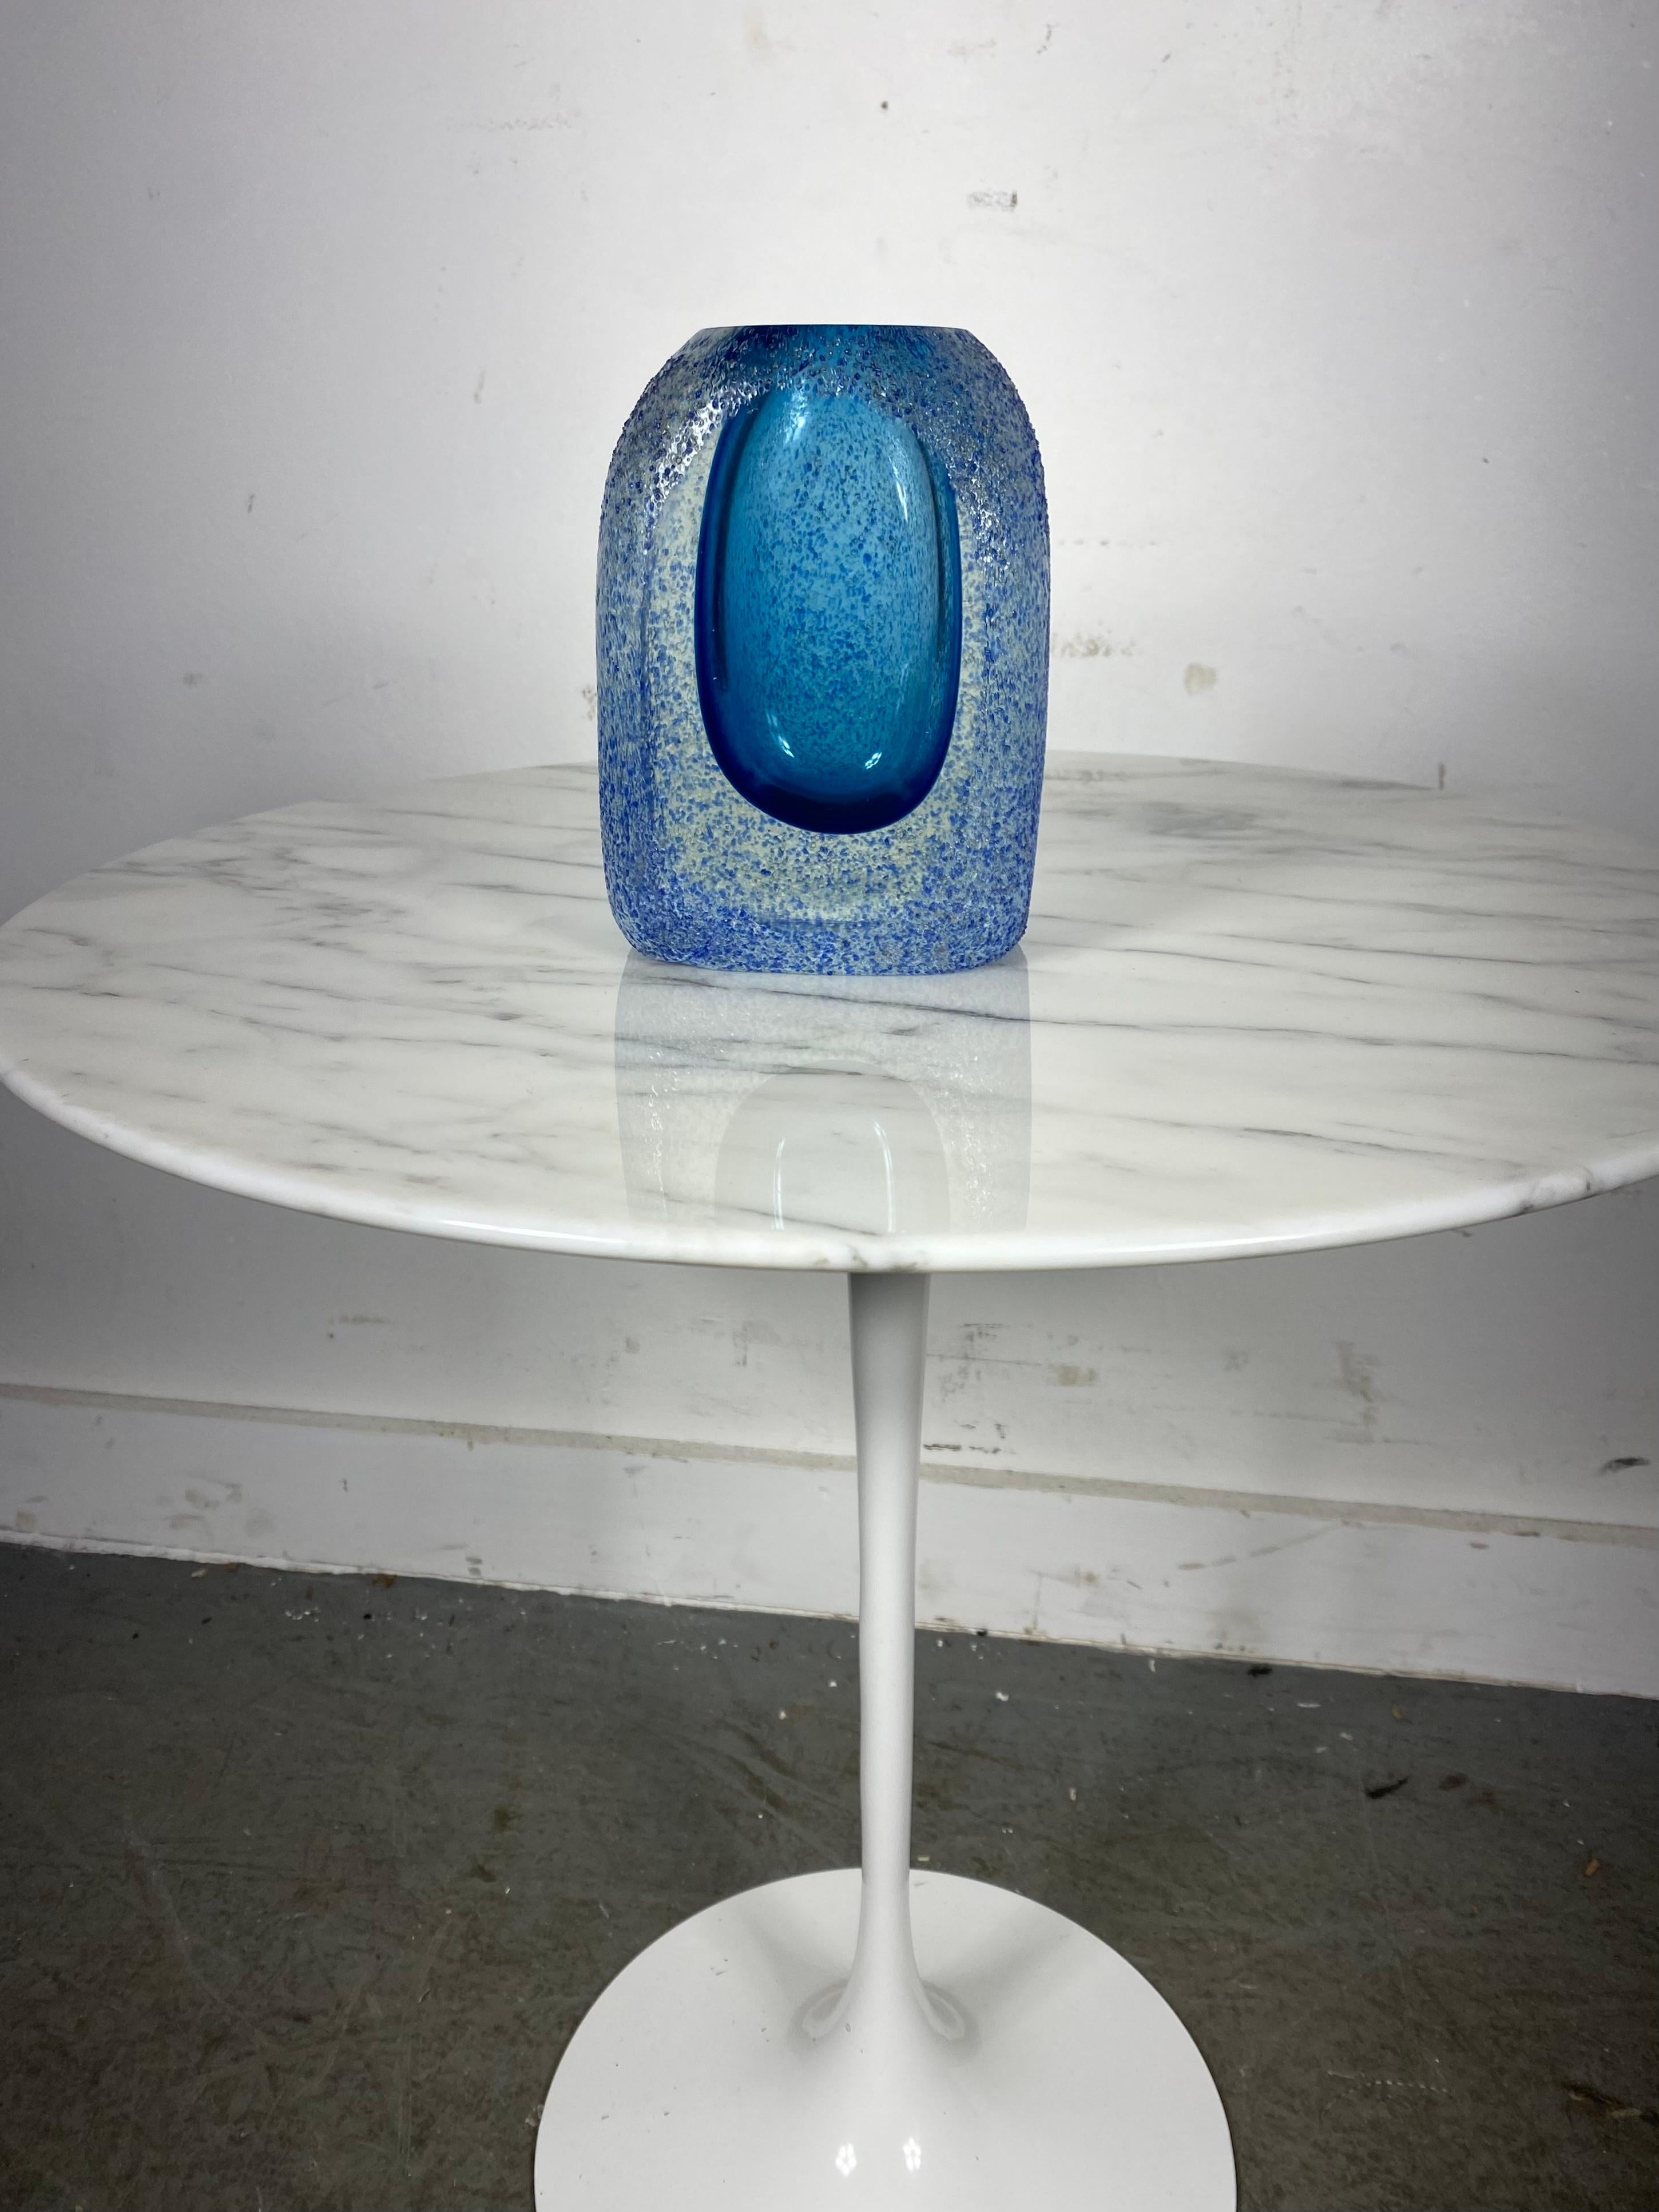 Étonnant vase en verre de Murano Sommerso du milieu du siècle, d'un bleu cobalt et azur brillant, avec une surface texturée contrastant avec un panneau frontal lisse et poli, par le verrier vénitien Alessando Mandruzzato (italien, 1934-). Mesures :